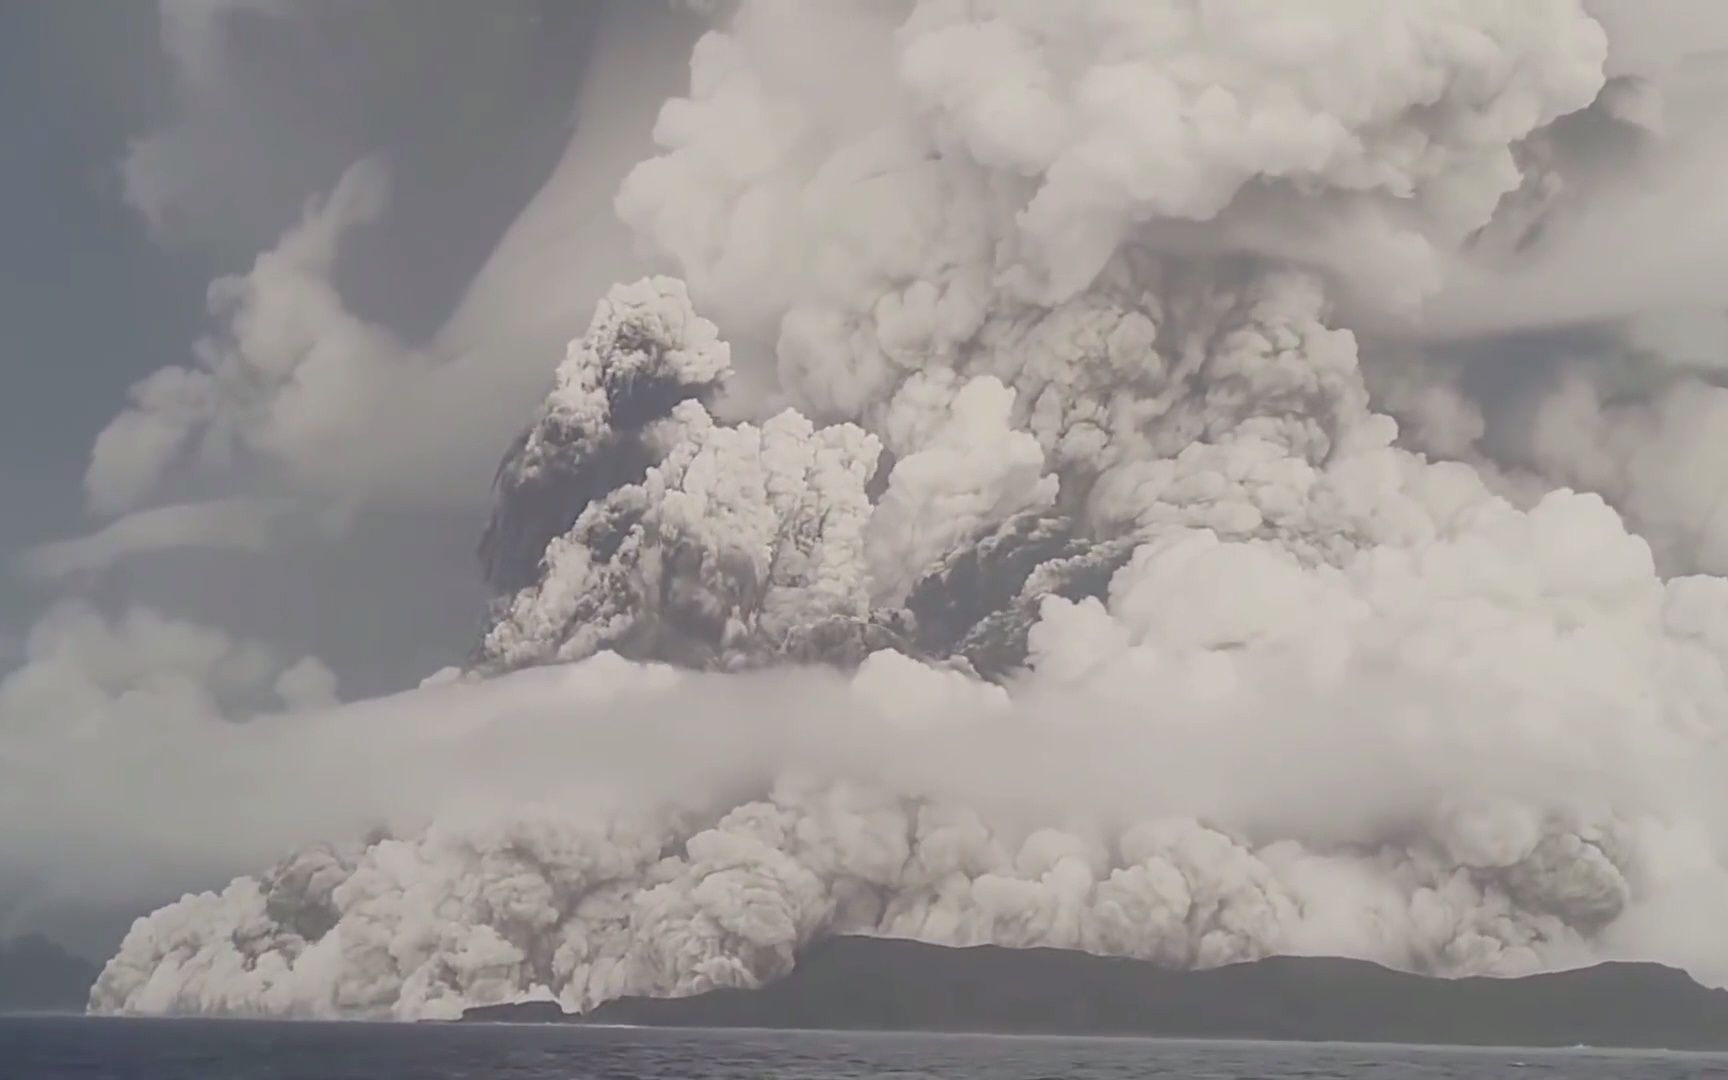 汤加海底火山喷发,21世纪迄今最大规模火山喷发